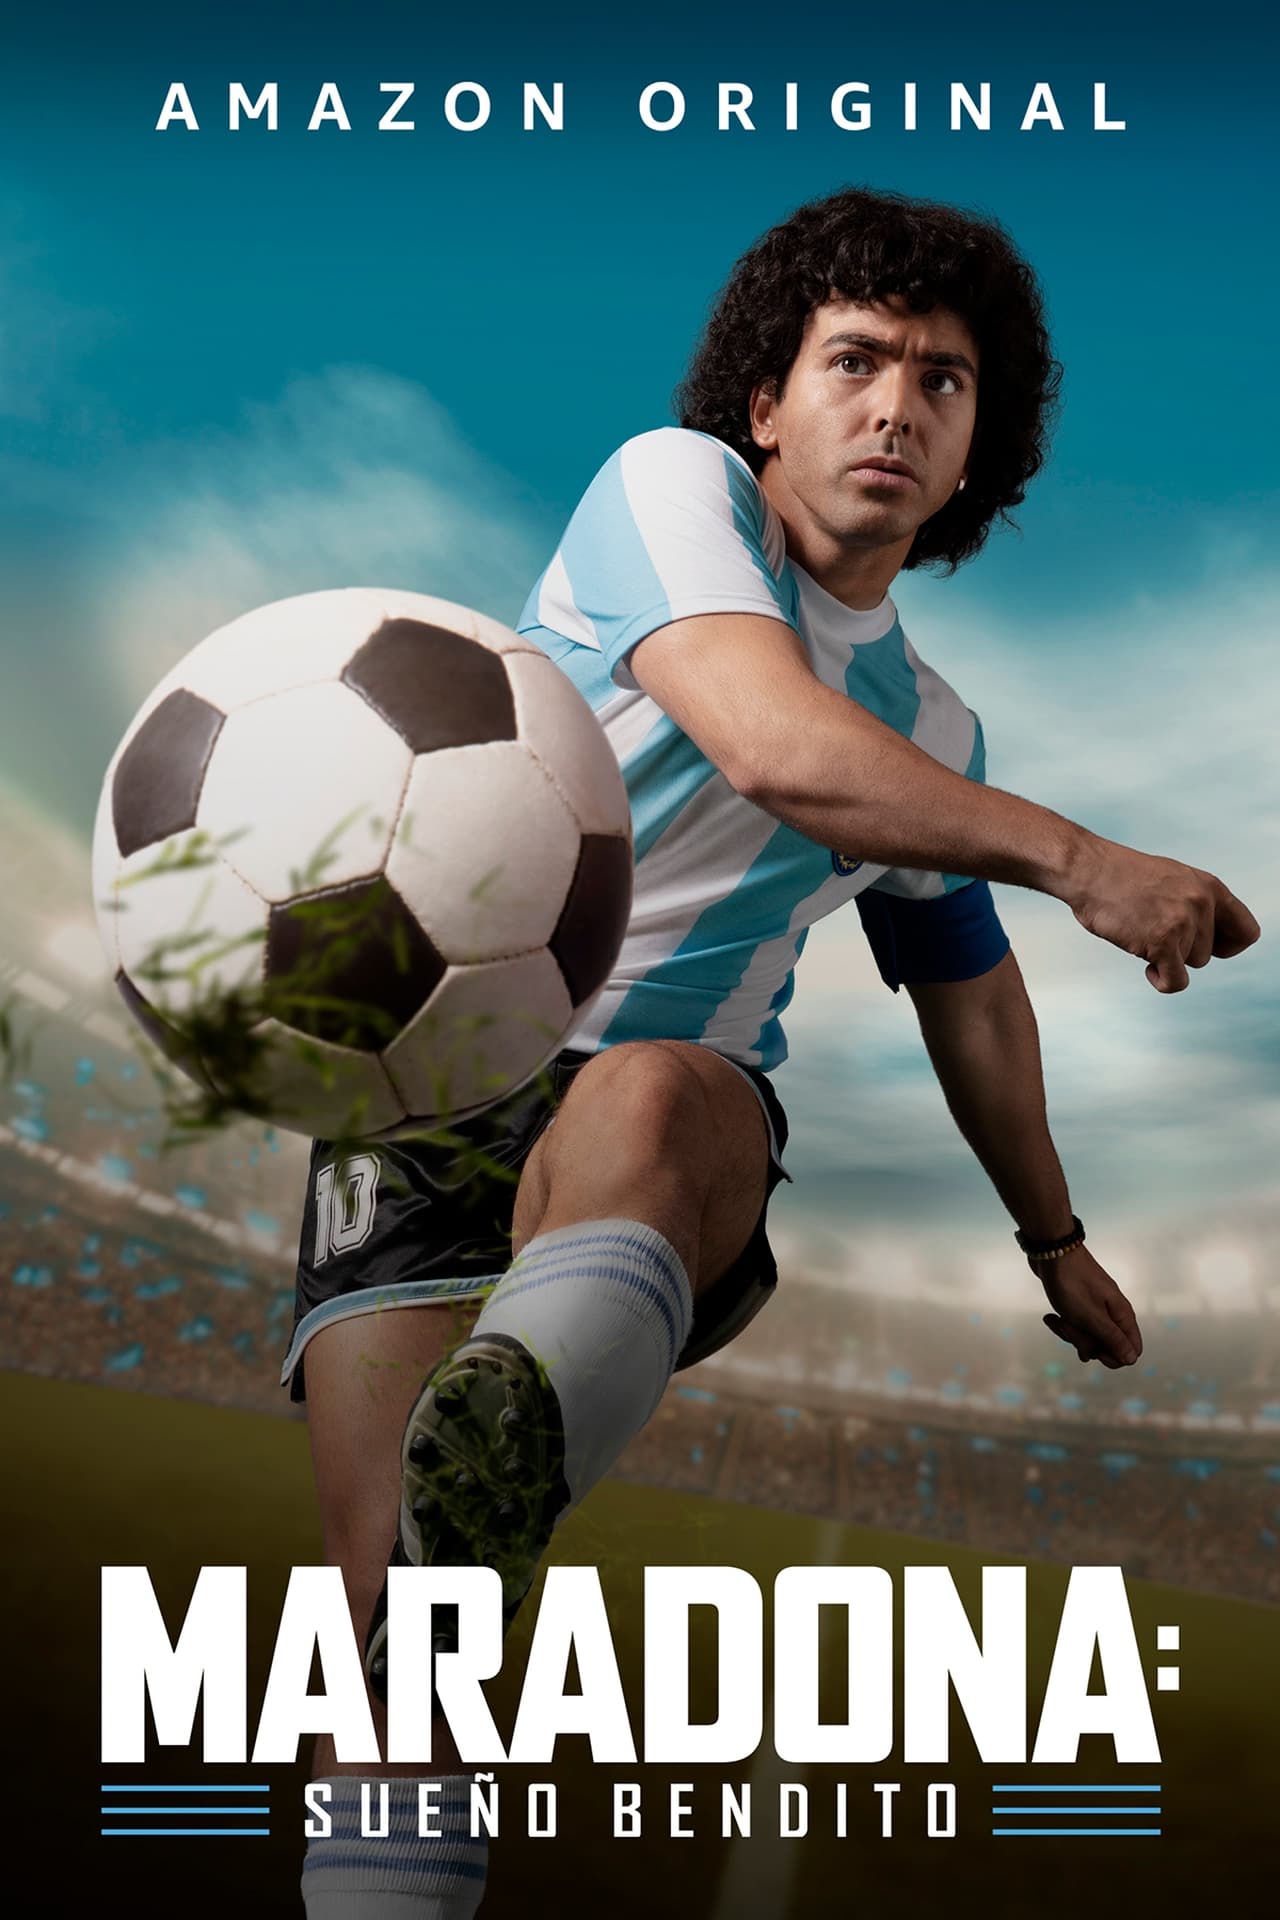 Maradona: Sueño bendito online latino